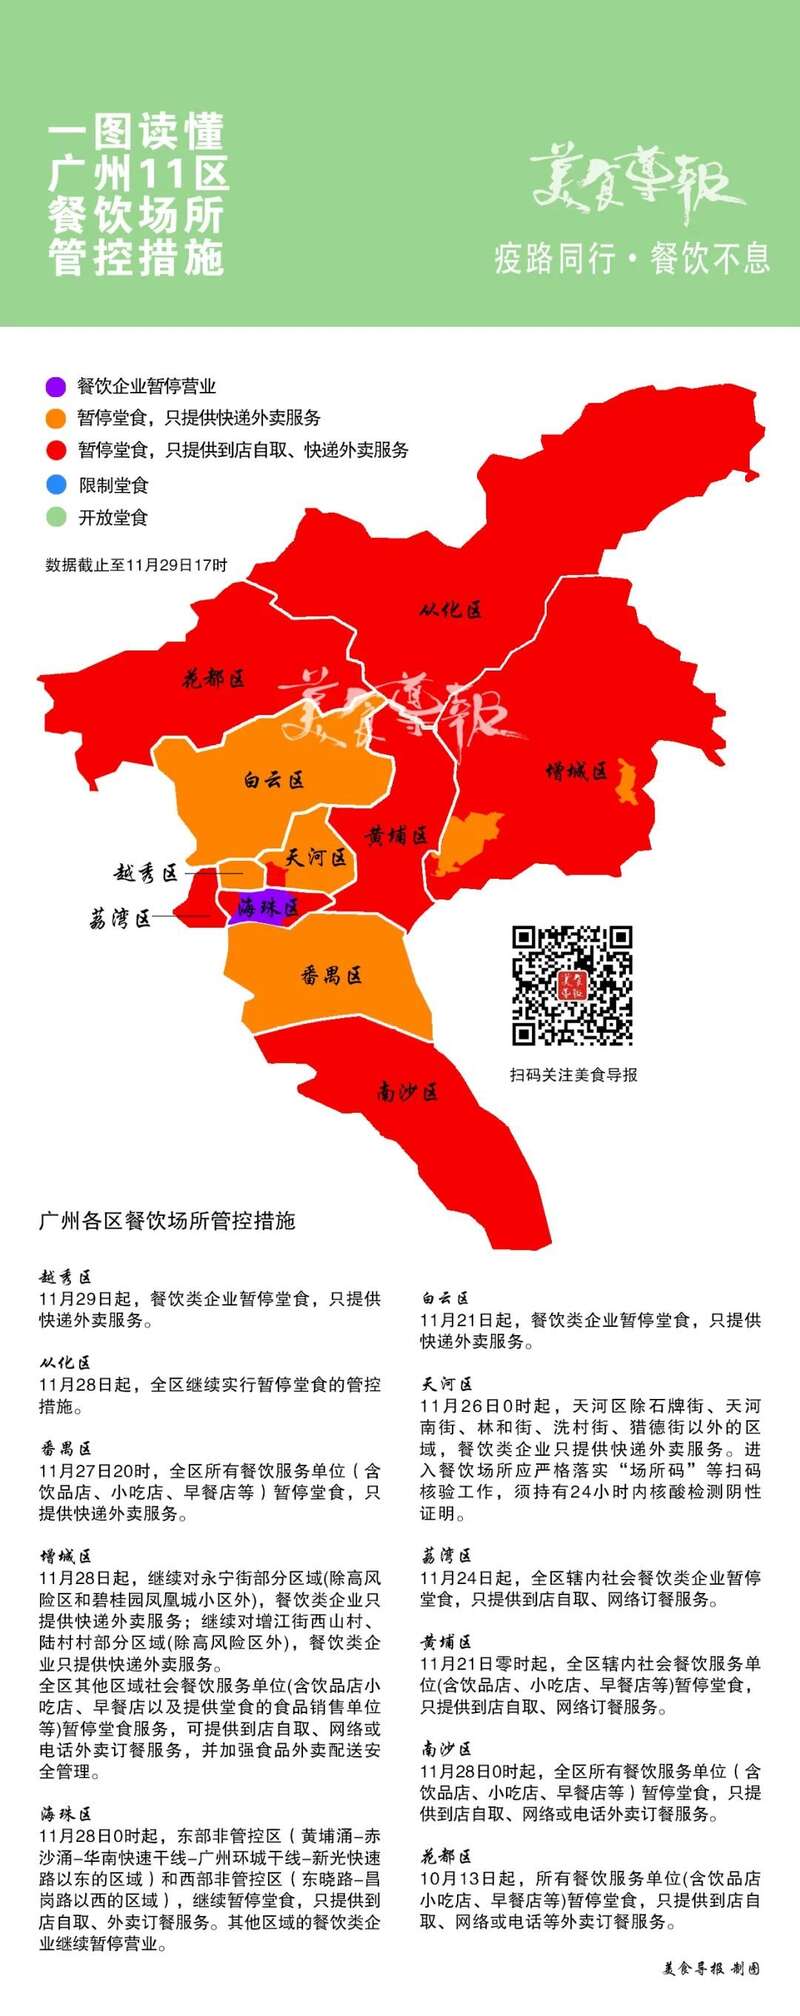 广州疫情形势严峻 爆发速度快 全市暂停堂食 2.jpg